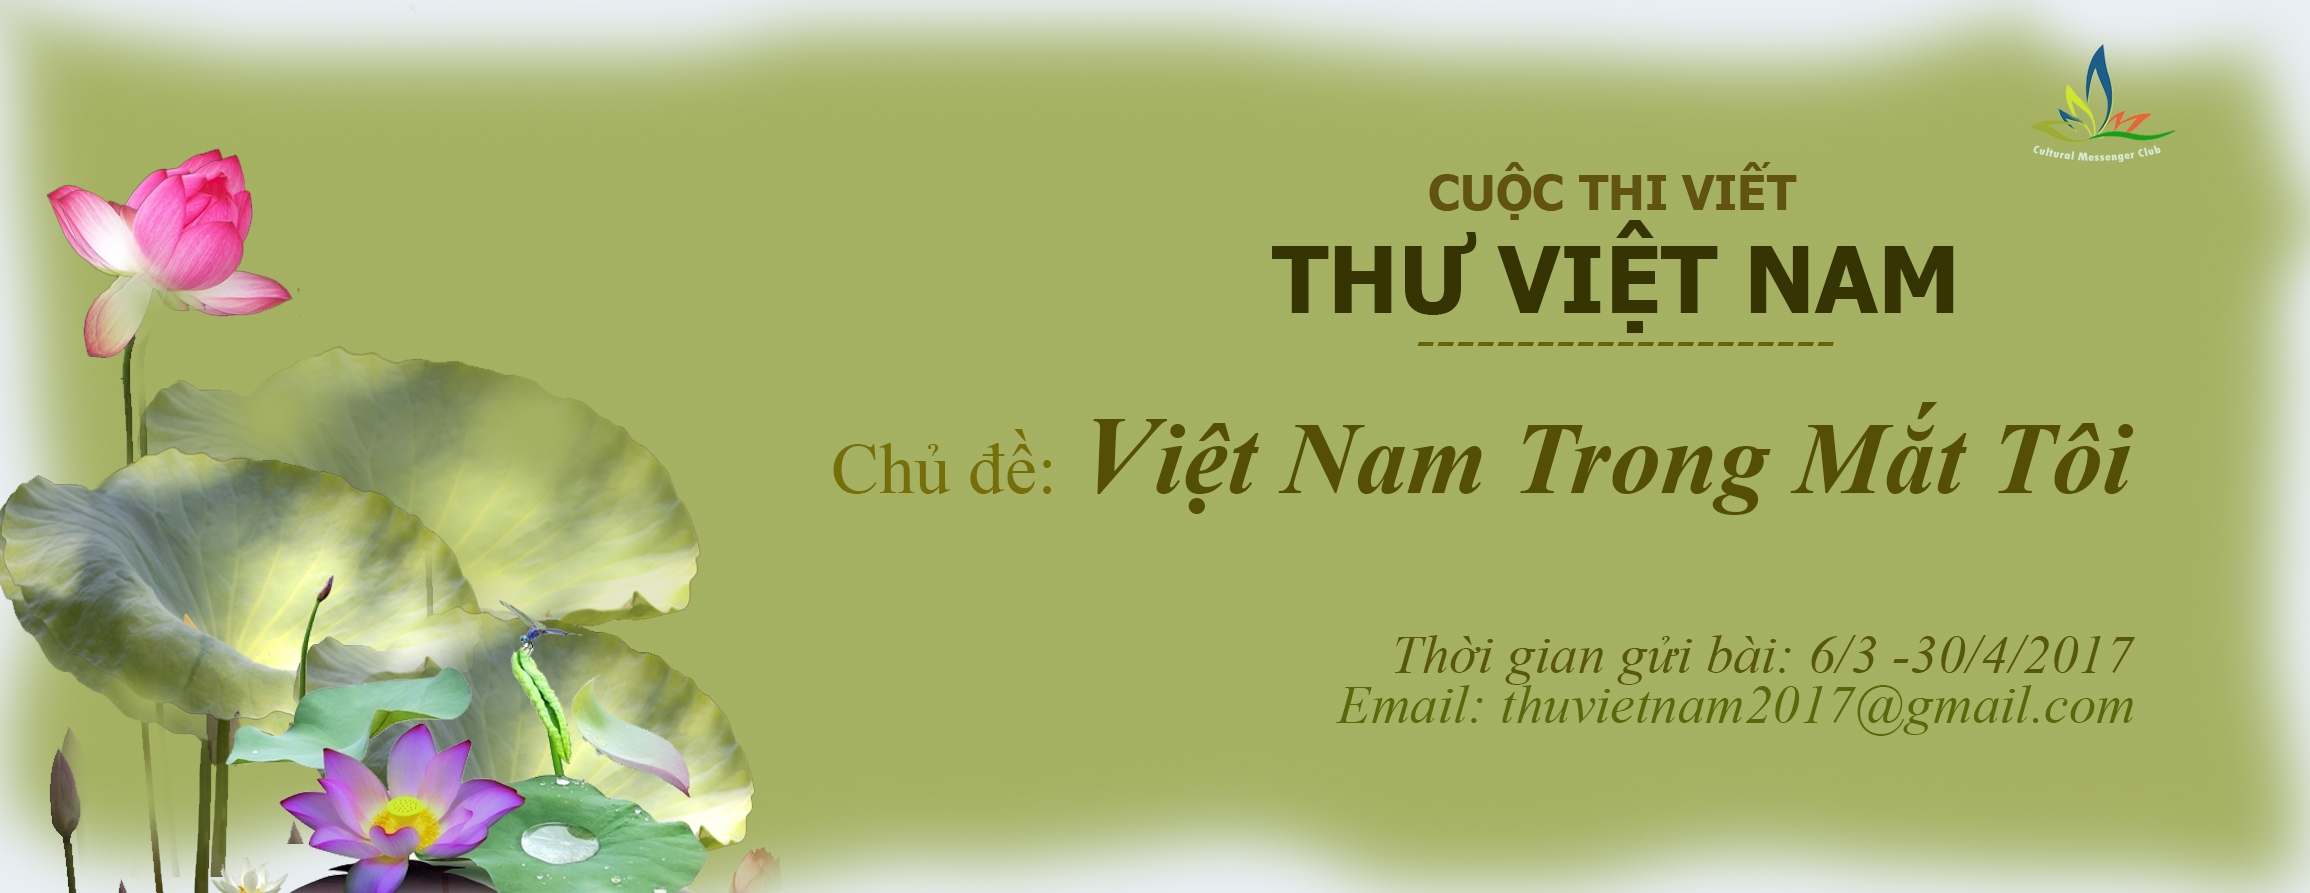 Phát động cuộc thi viết Thư Việt Nam lần thứ nhất (2017)